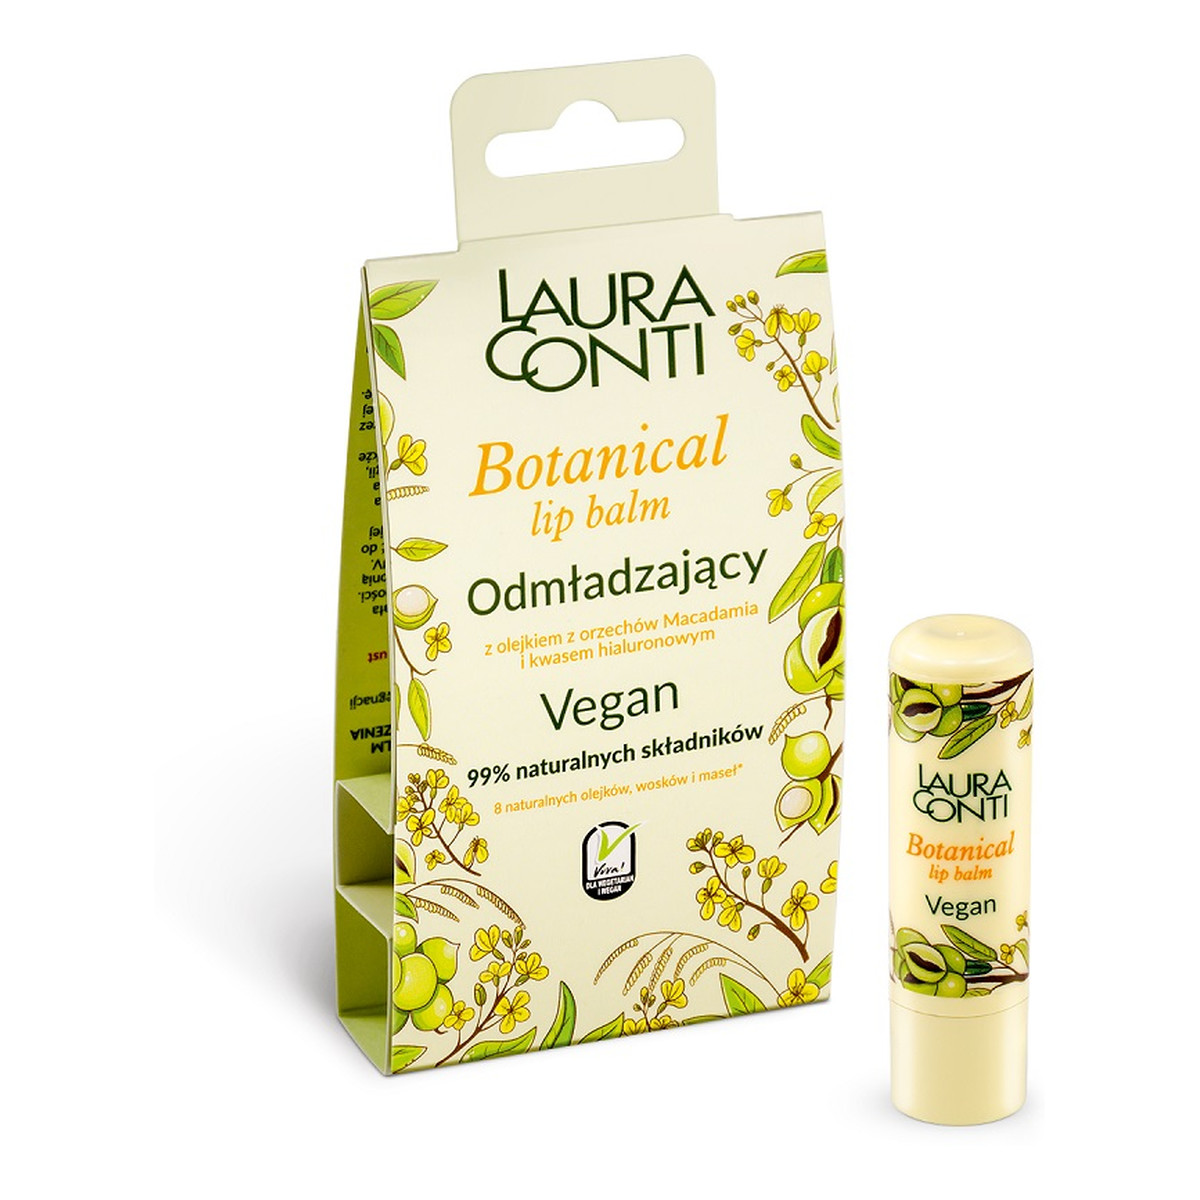 Laura Conti Botanical odmładzający Balsam do ust 4,8 g 4.8g